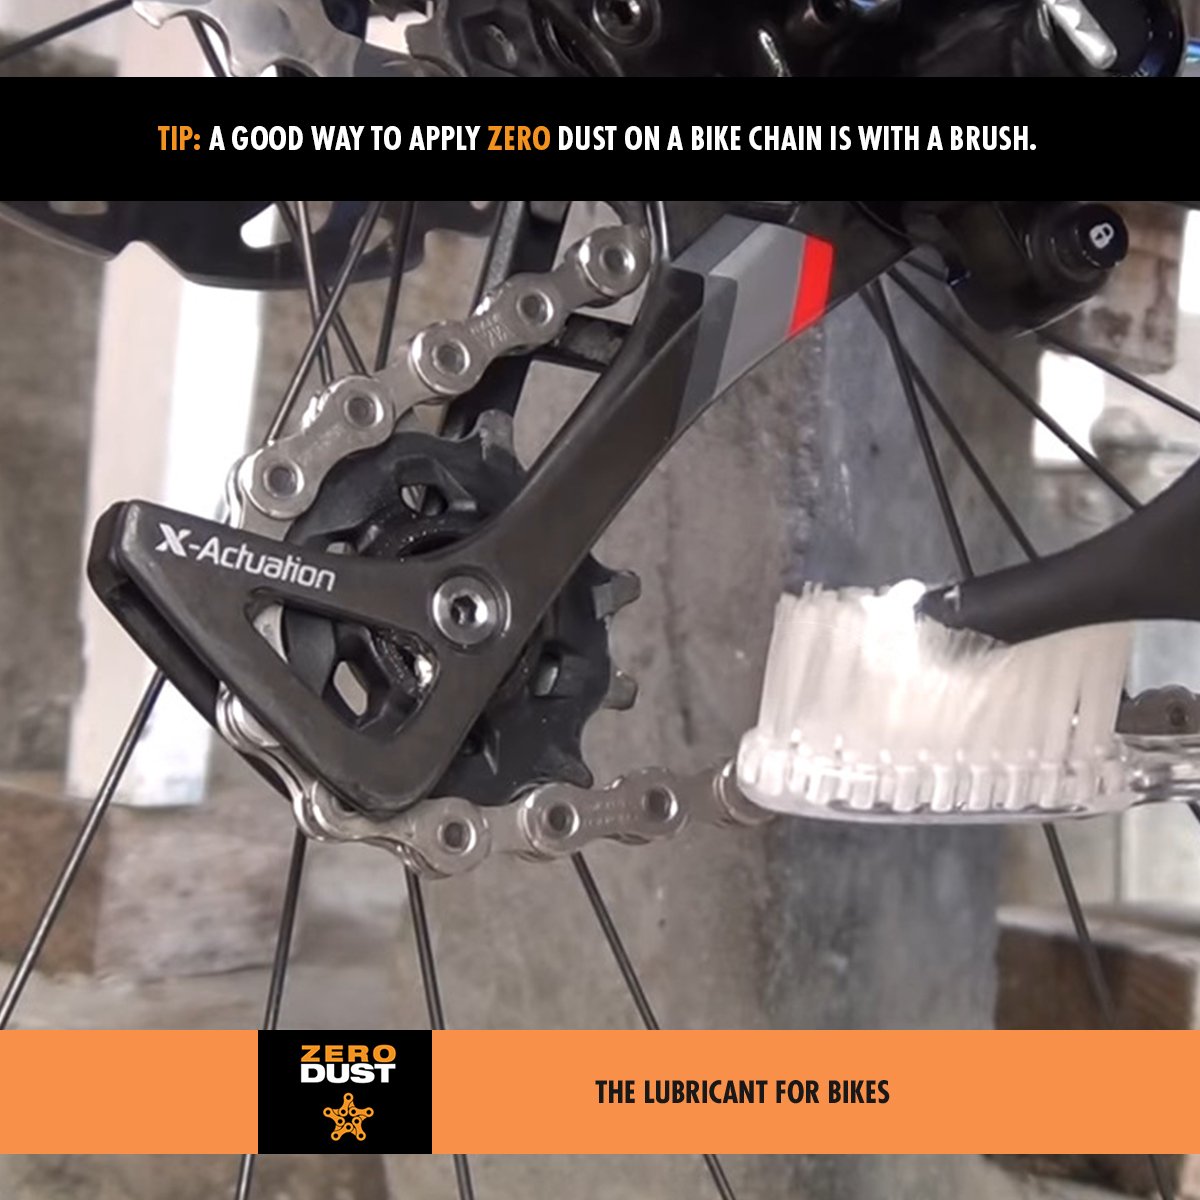 ZeroDust Chain Lube (60 ml - dosage for 2 bikes) - Action Emporium